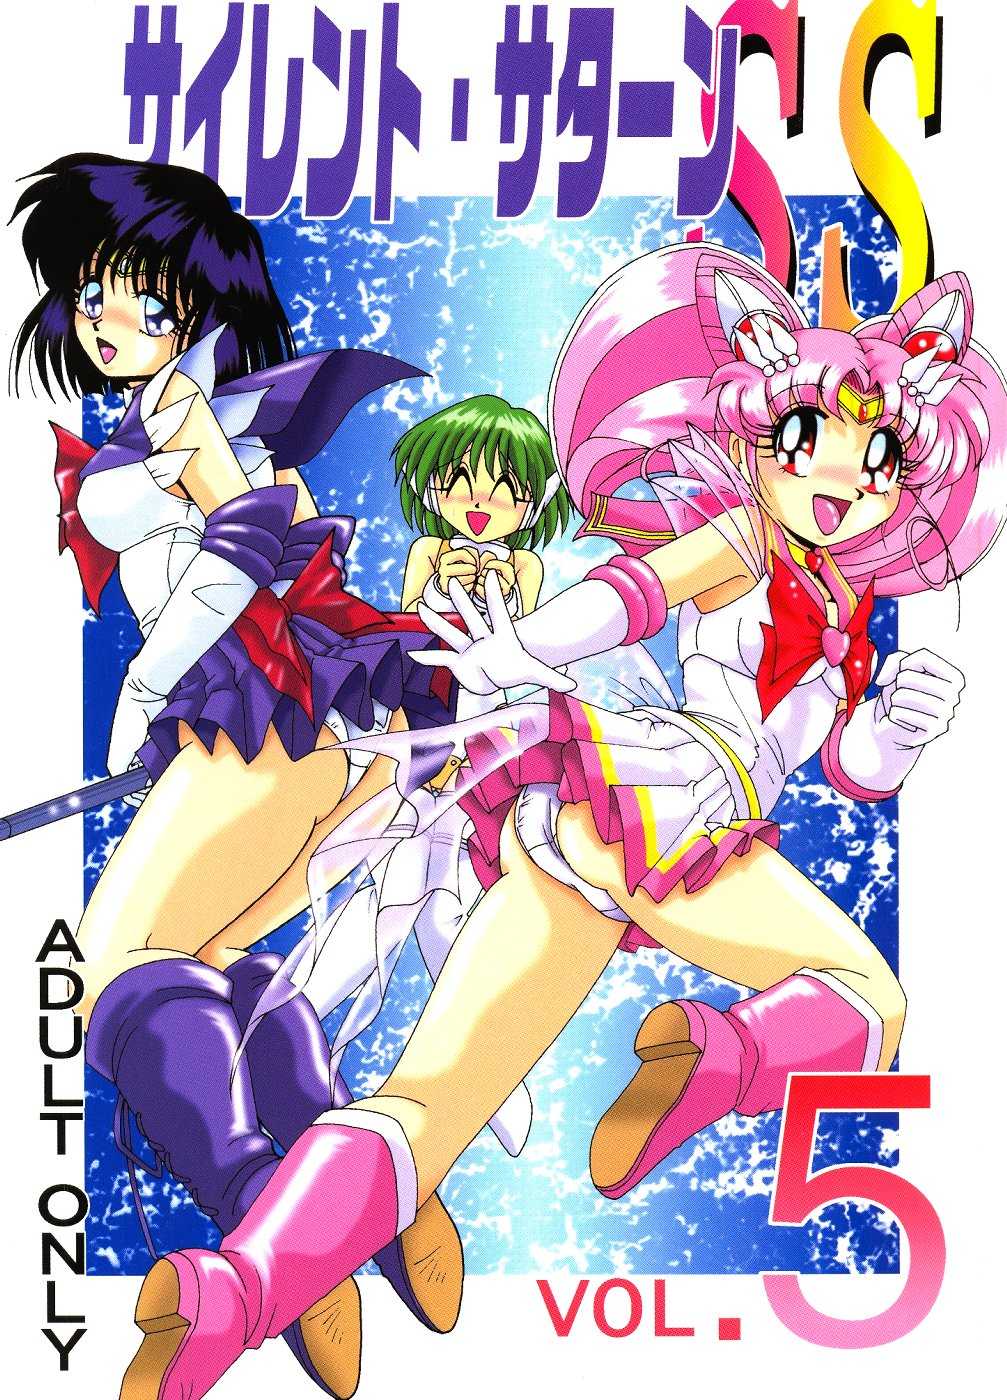 Saateiseibaazutoriito 2D Shooting - Silent Saturn SS 05 (Sailor Moon) 